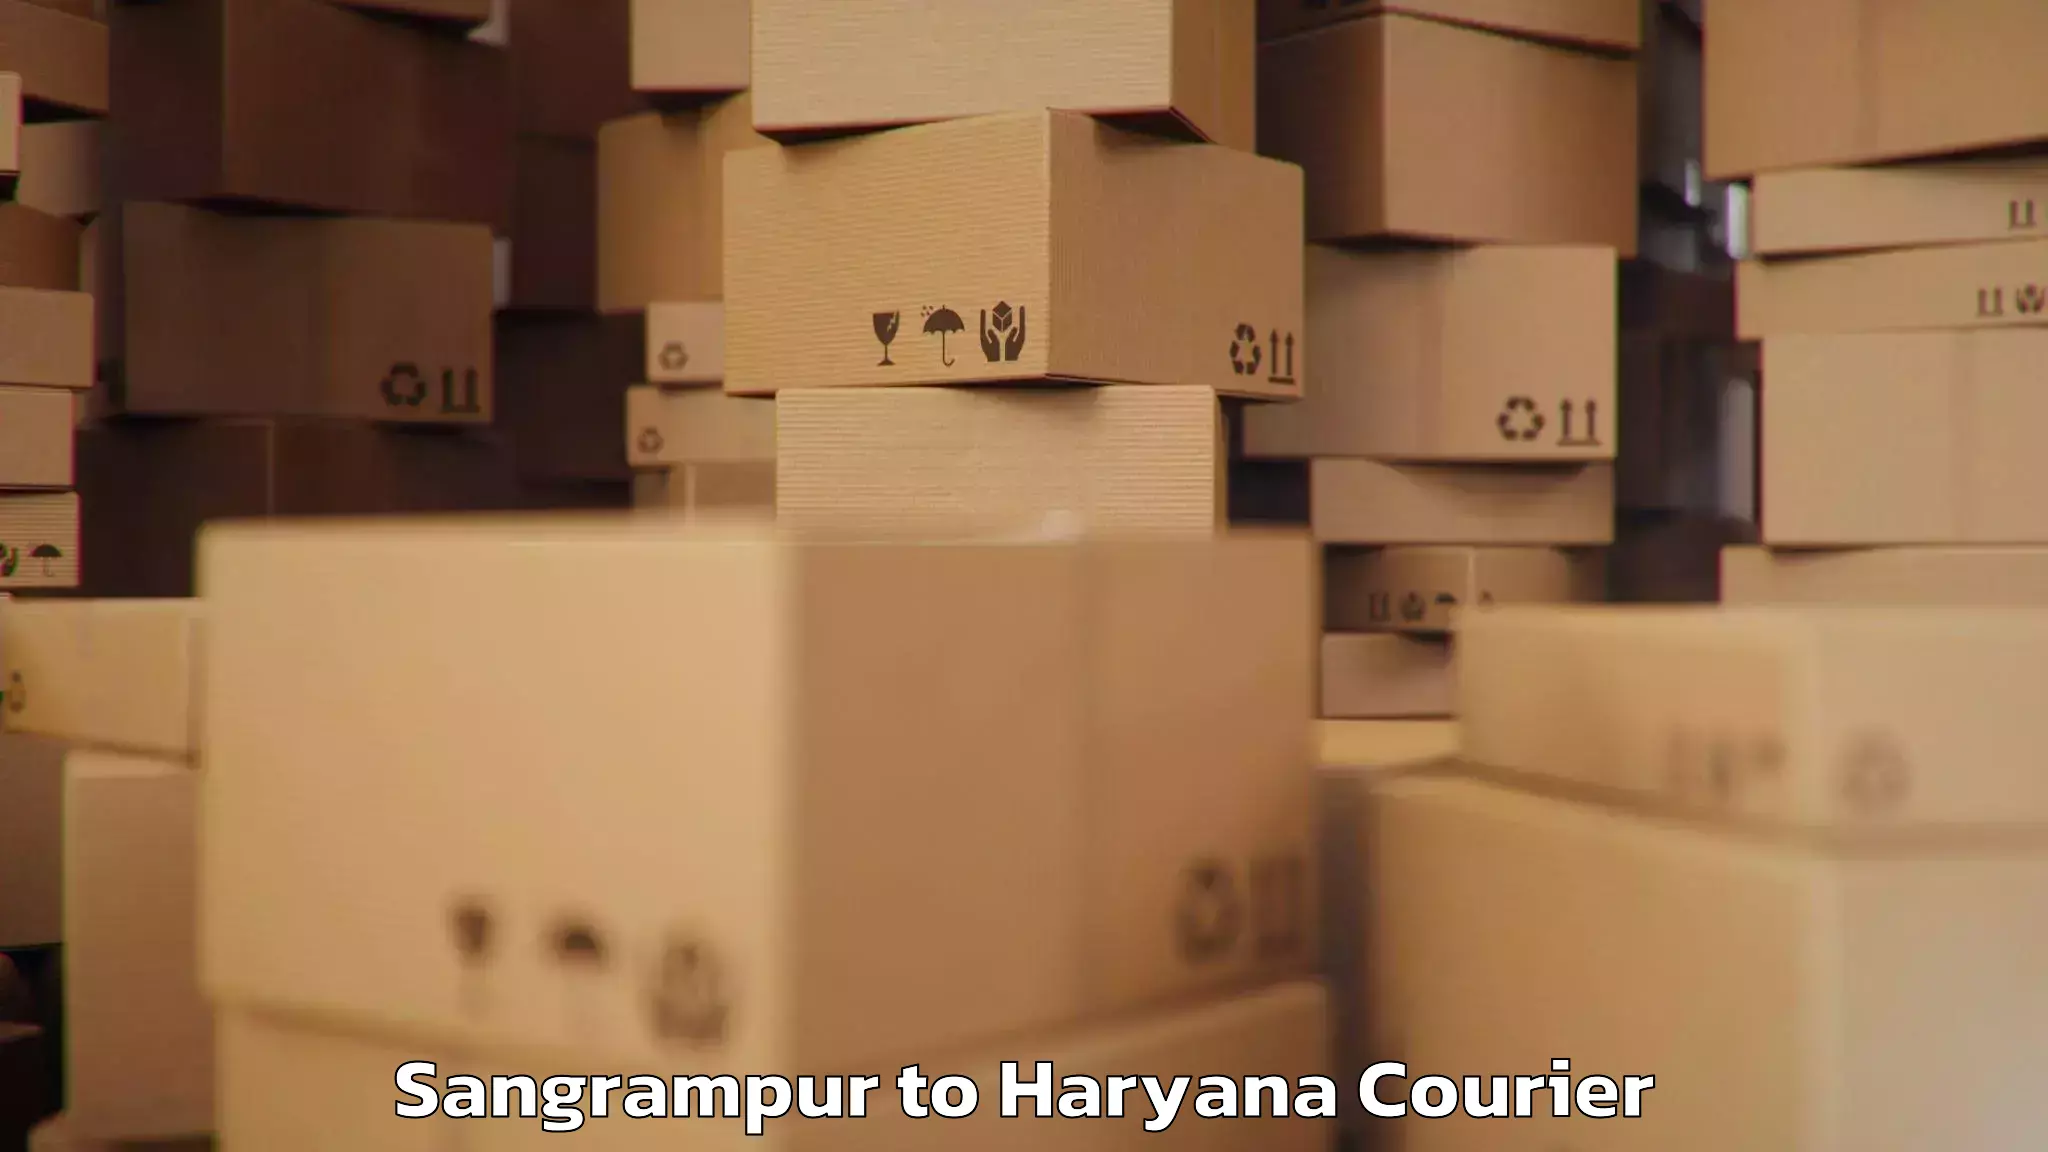 Artwork baggage courier Sangrampur to NCR Haryana